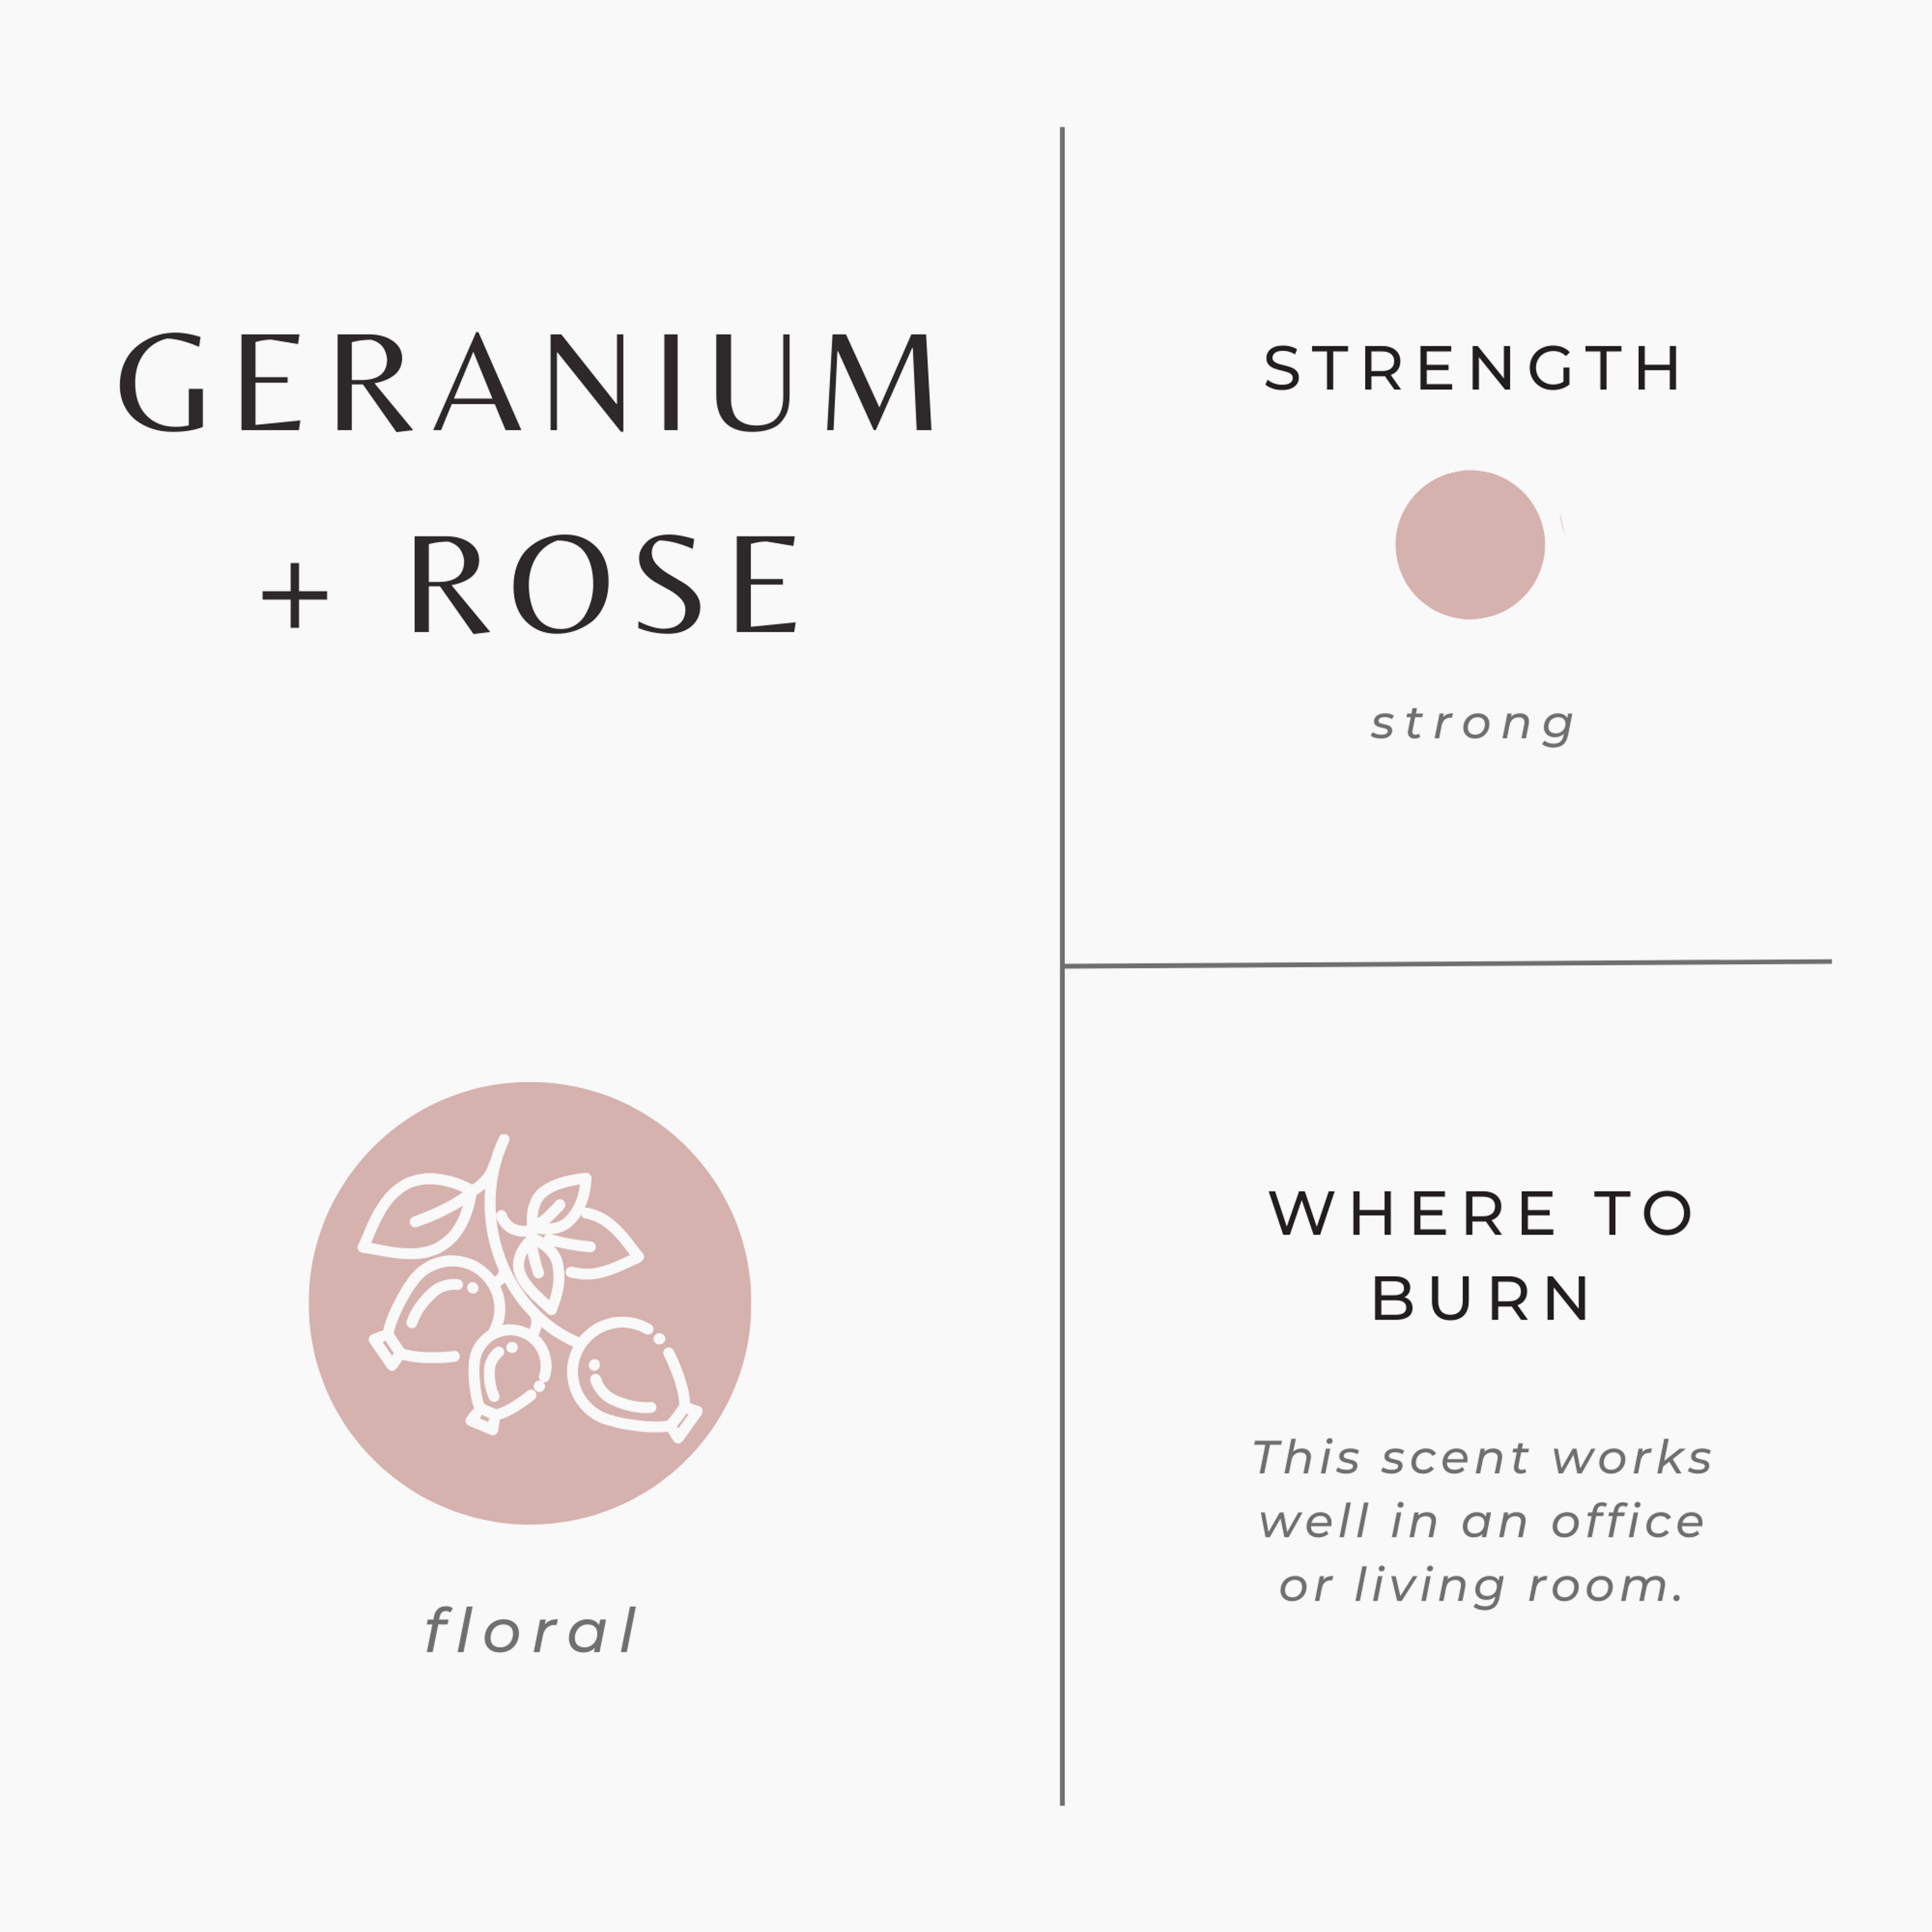 Geranium + Rose